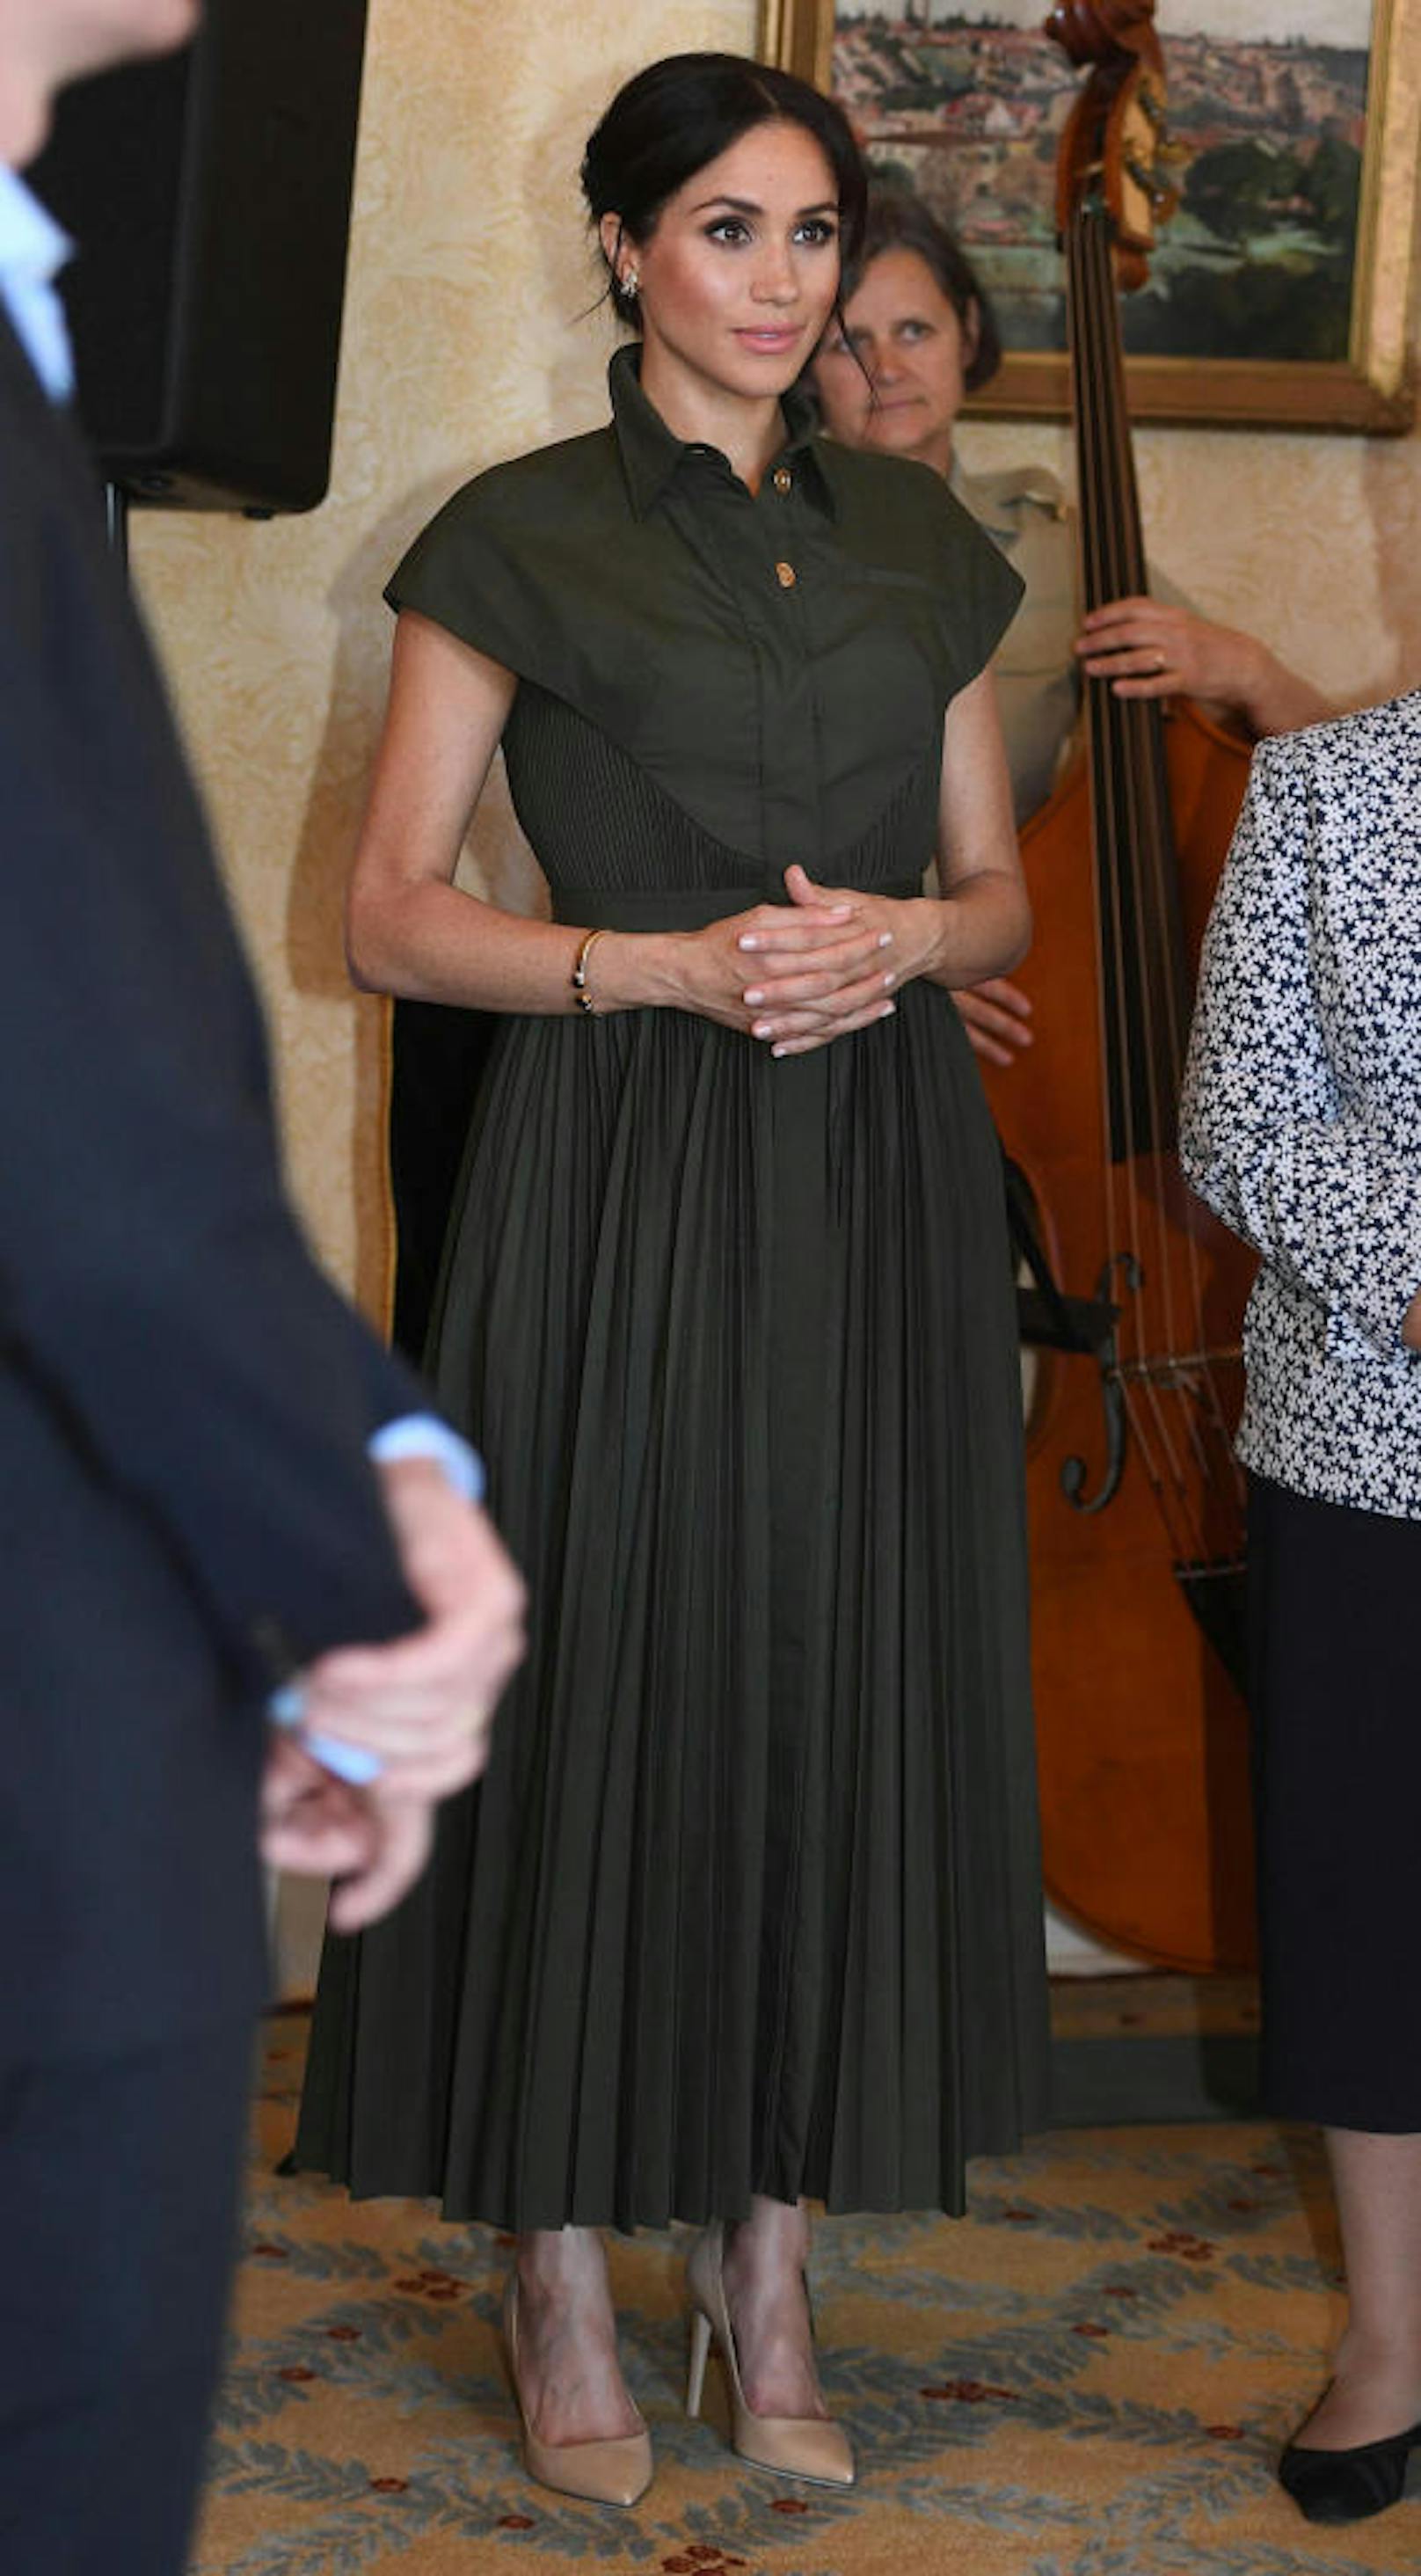 Tag 1 in Australien: Bei der Admiralty House Reception trug die 37-Jährige ein khaki-grünes Kleid mit Plissee-Rock von Brandon Maxwell. Dazu kombinierte sie zu ehren von Prinzessin Diana deren Heirloom-Schmetterlingsohrringe und ihren goldenen Armreif.